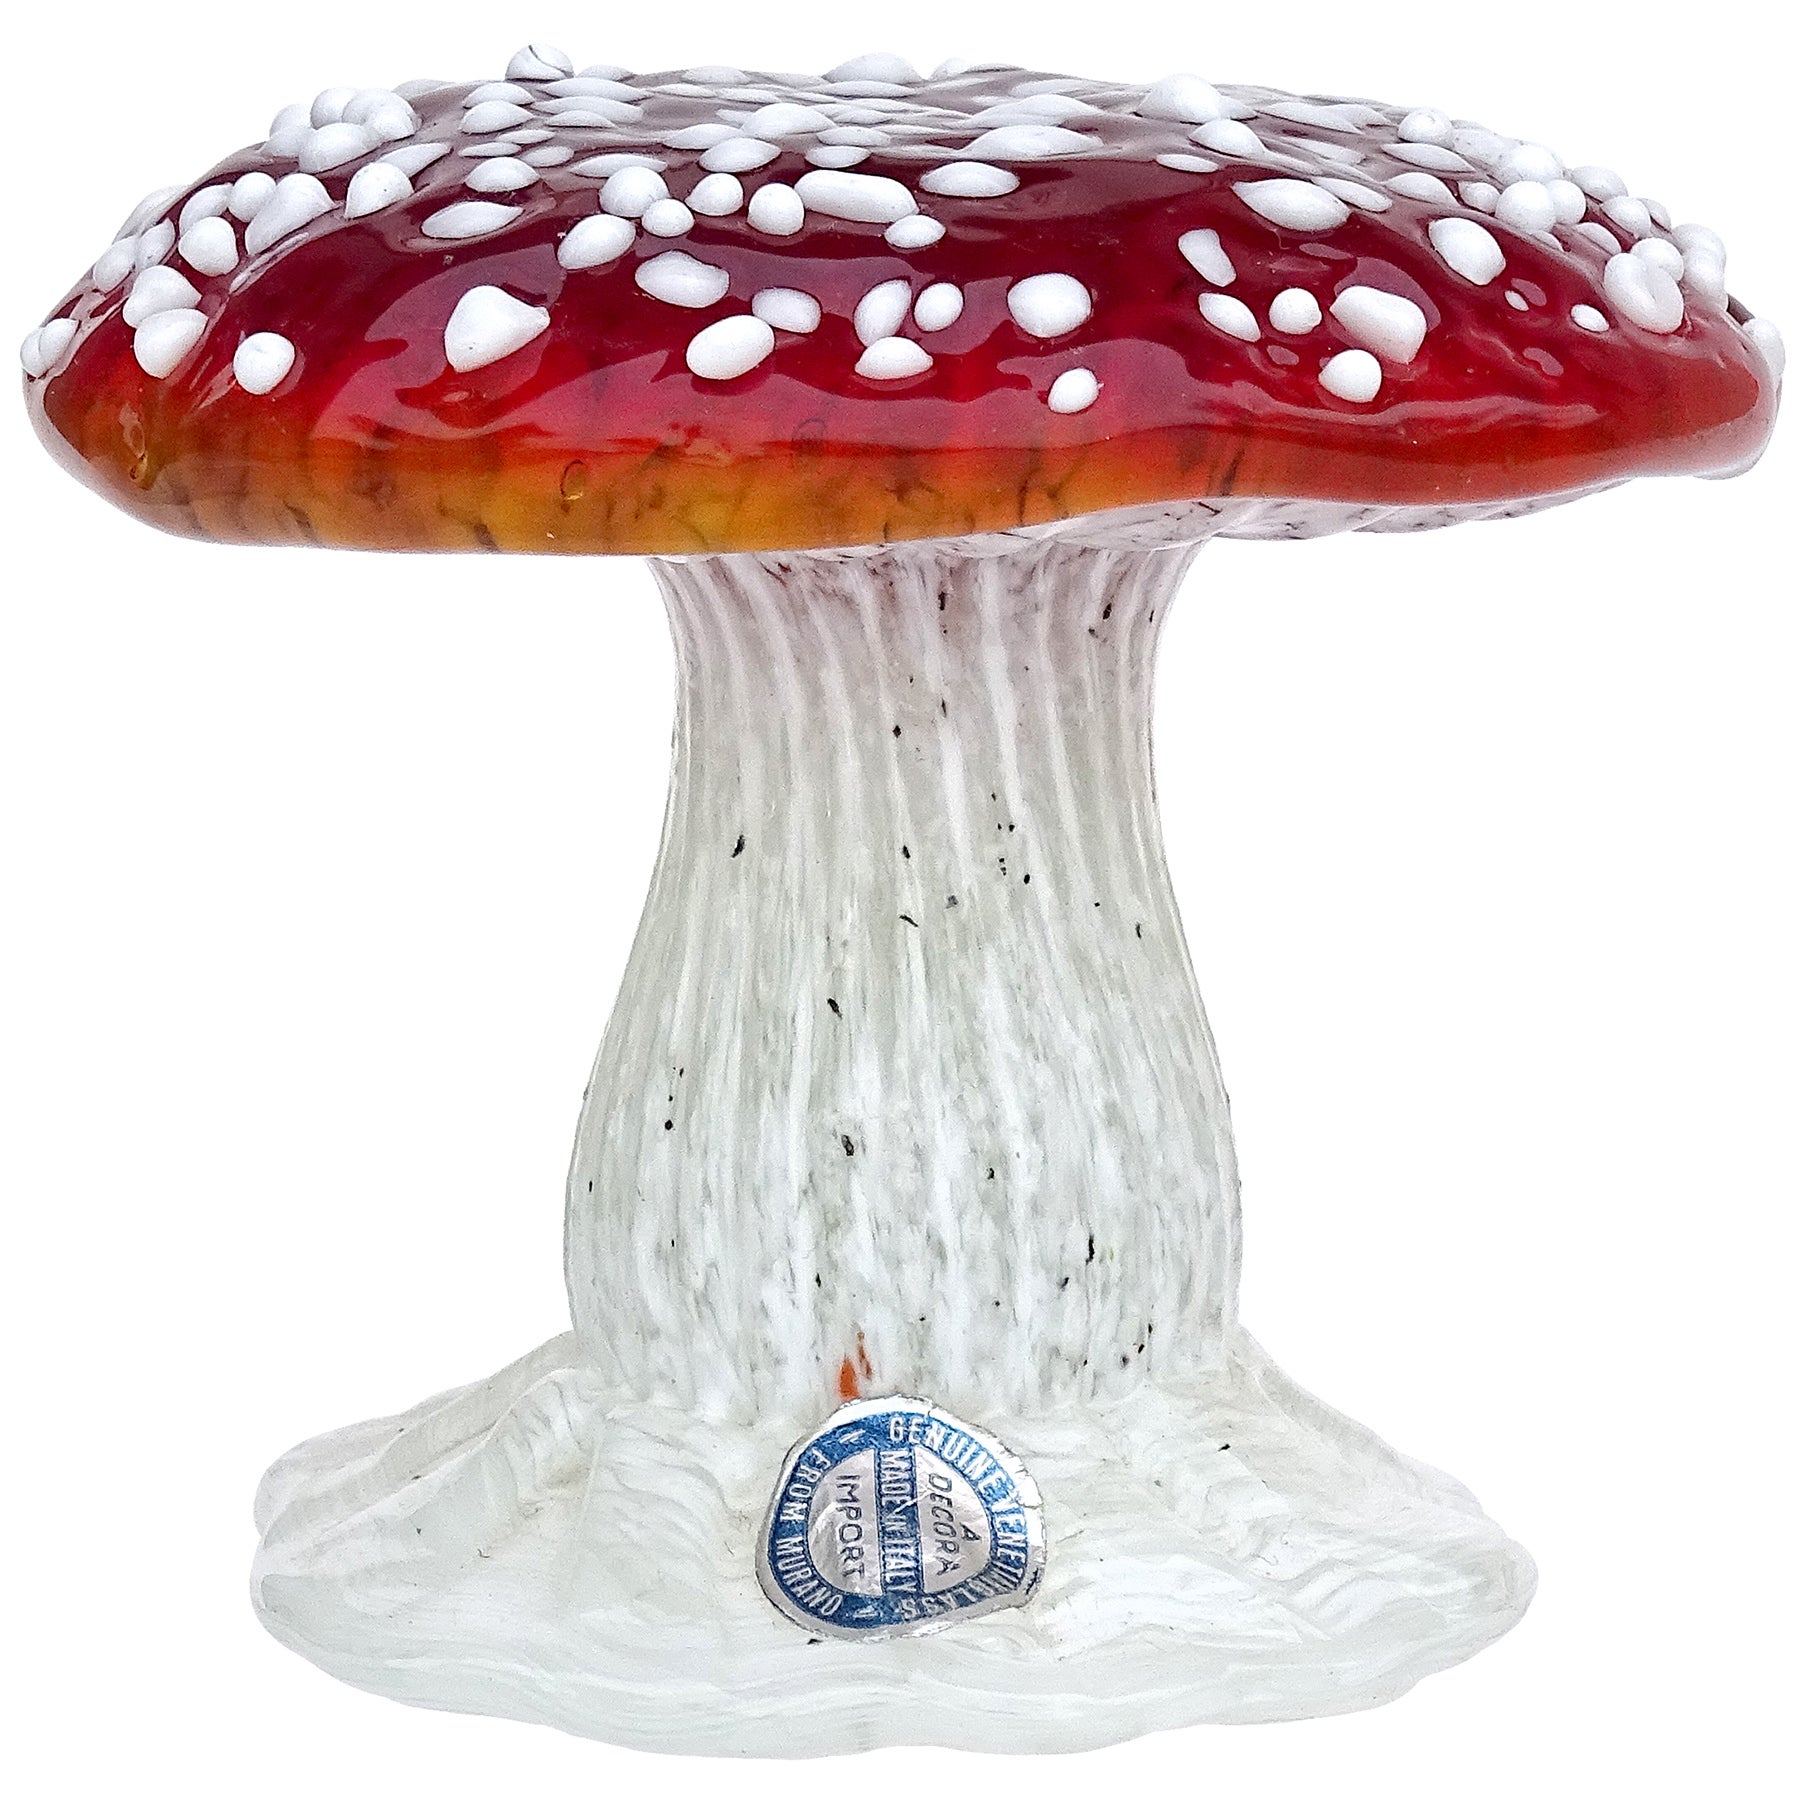 Sculpture en verre d'art italien de Murano, tache rouge, blanche, presse-papier champignon toadstool champignon